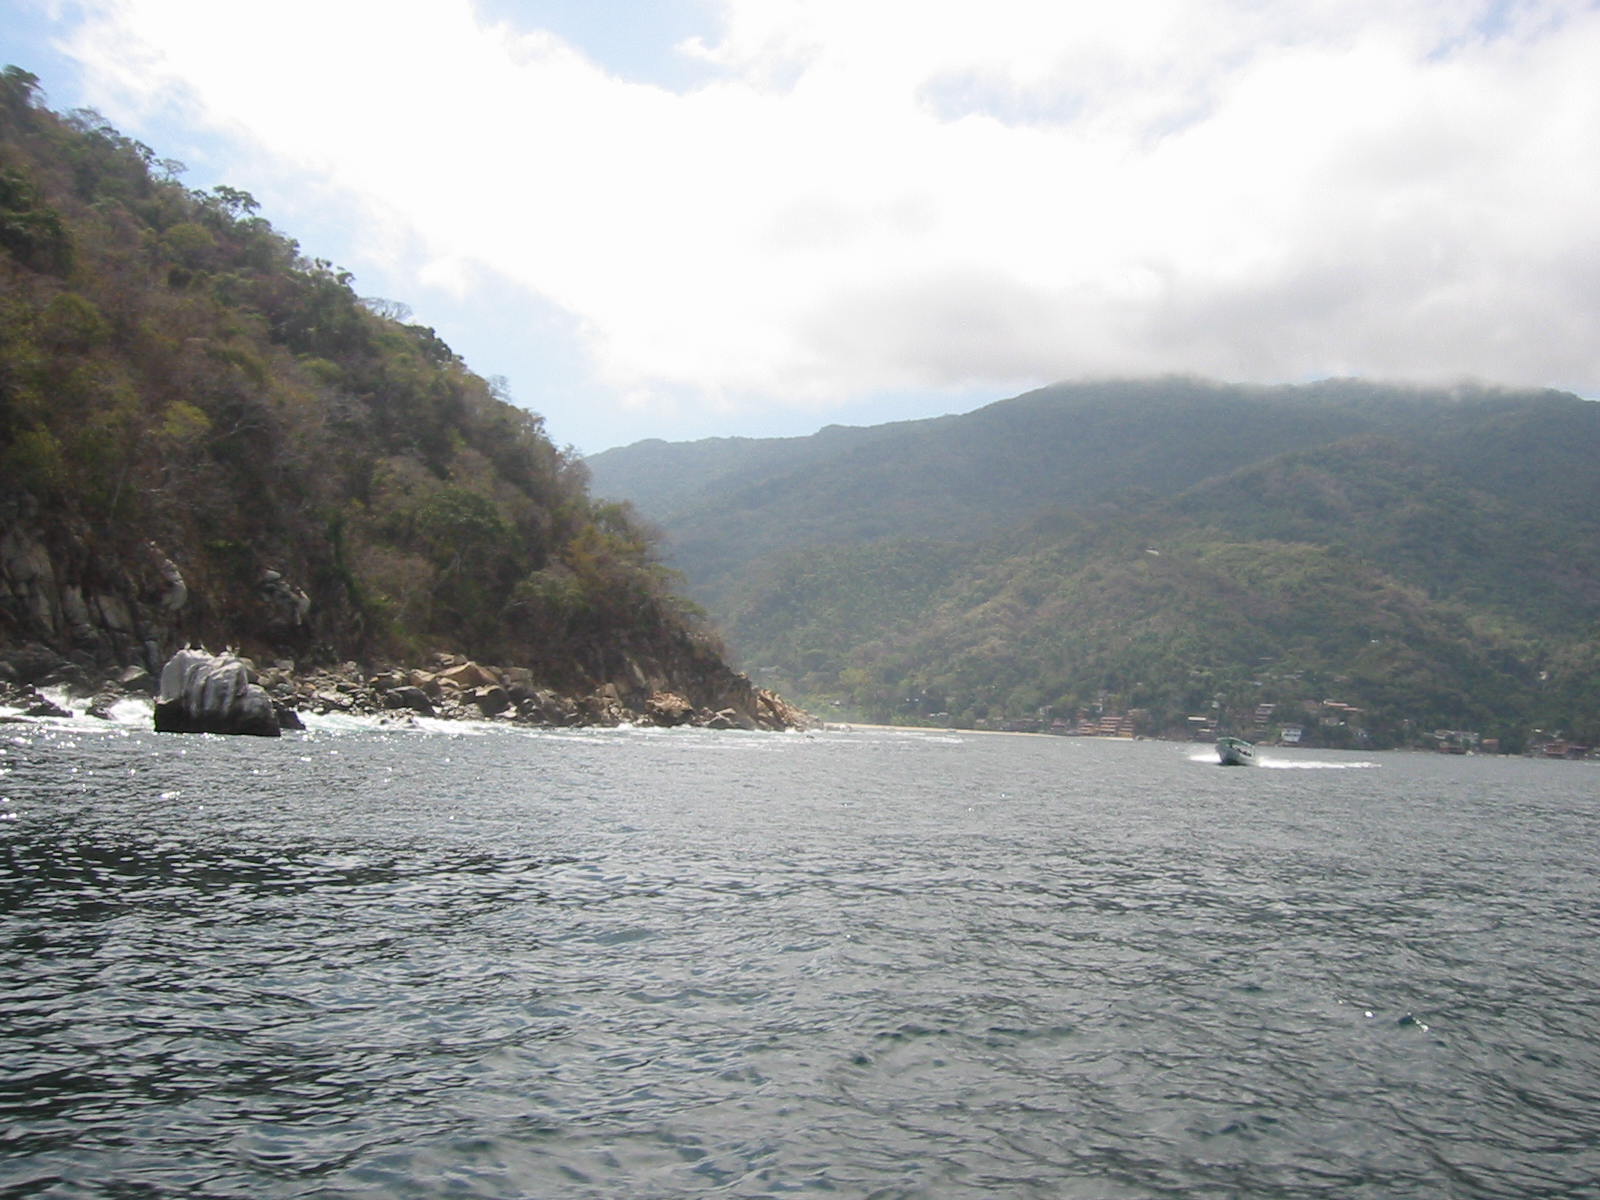 Entering Yalapa's bay